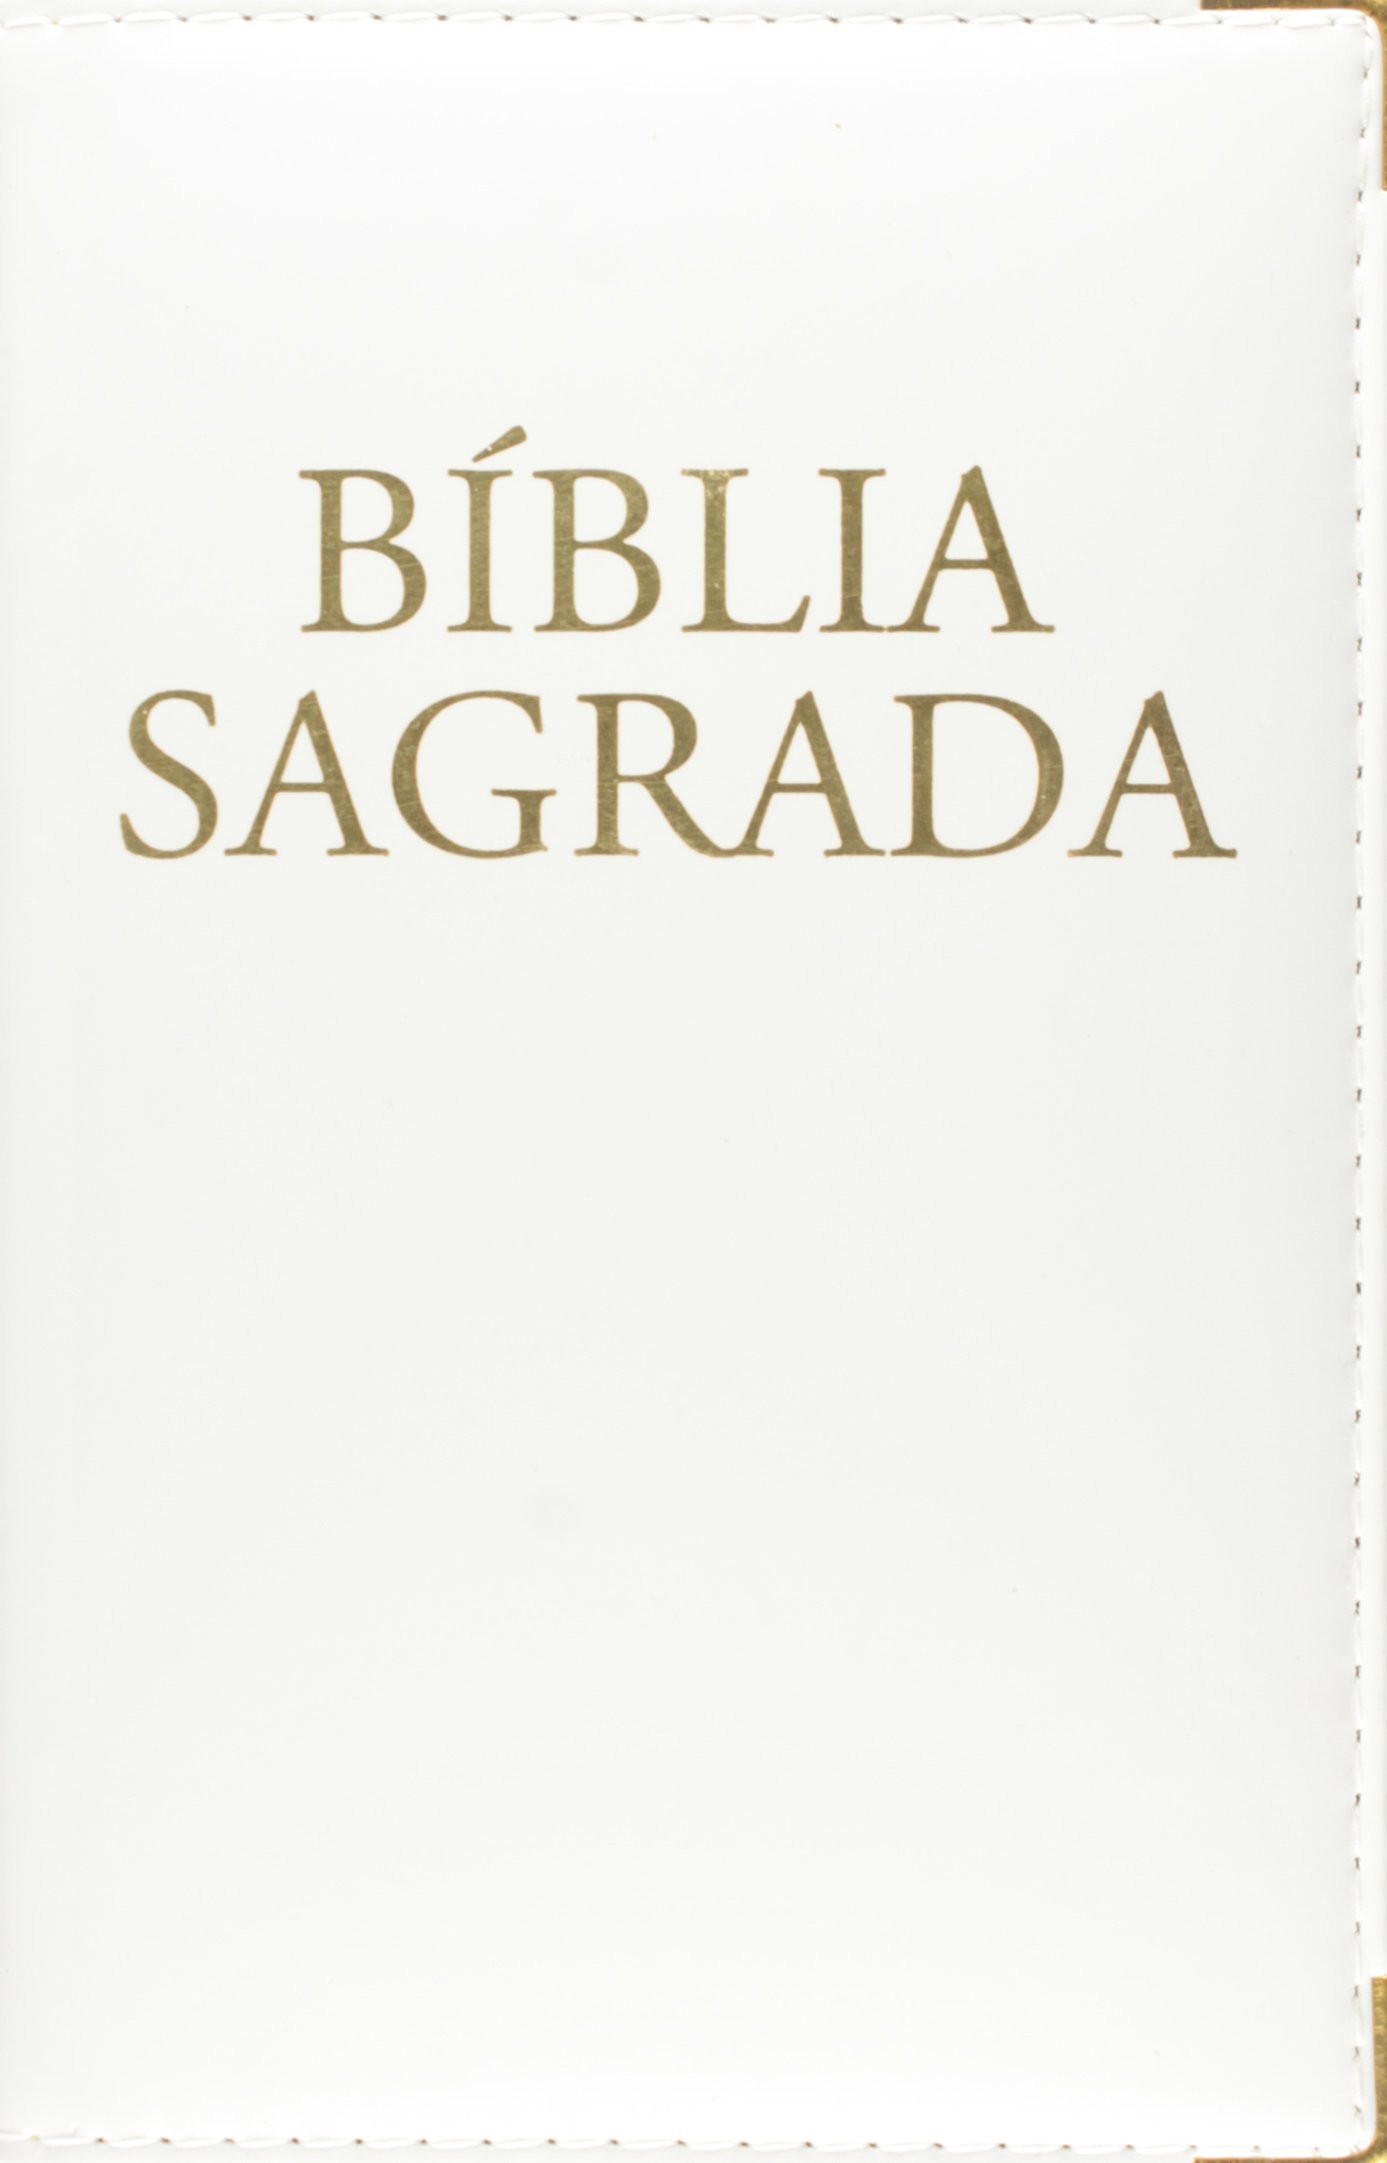 9788535611762 - BIBLIA SAGRADA NOVA TRADUCAO NA LINGUAGEM DE HOJE 900G EDITORA PAULINAS